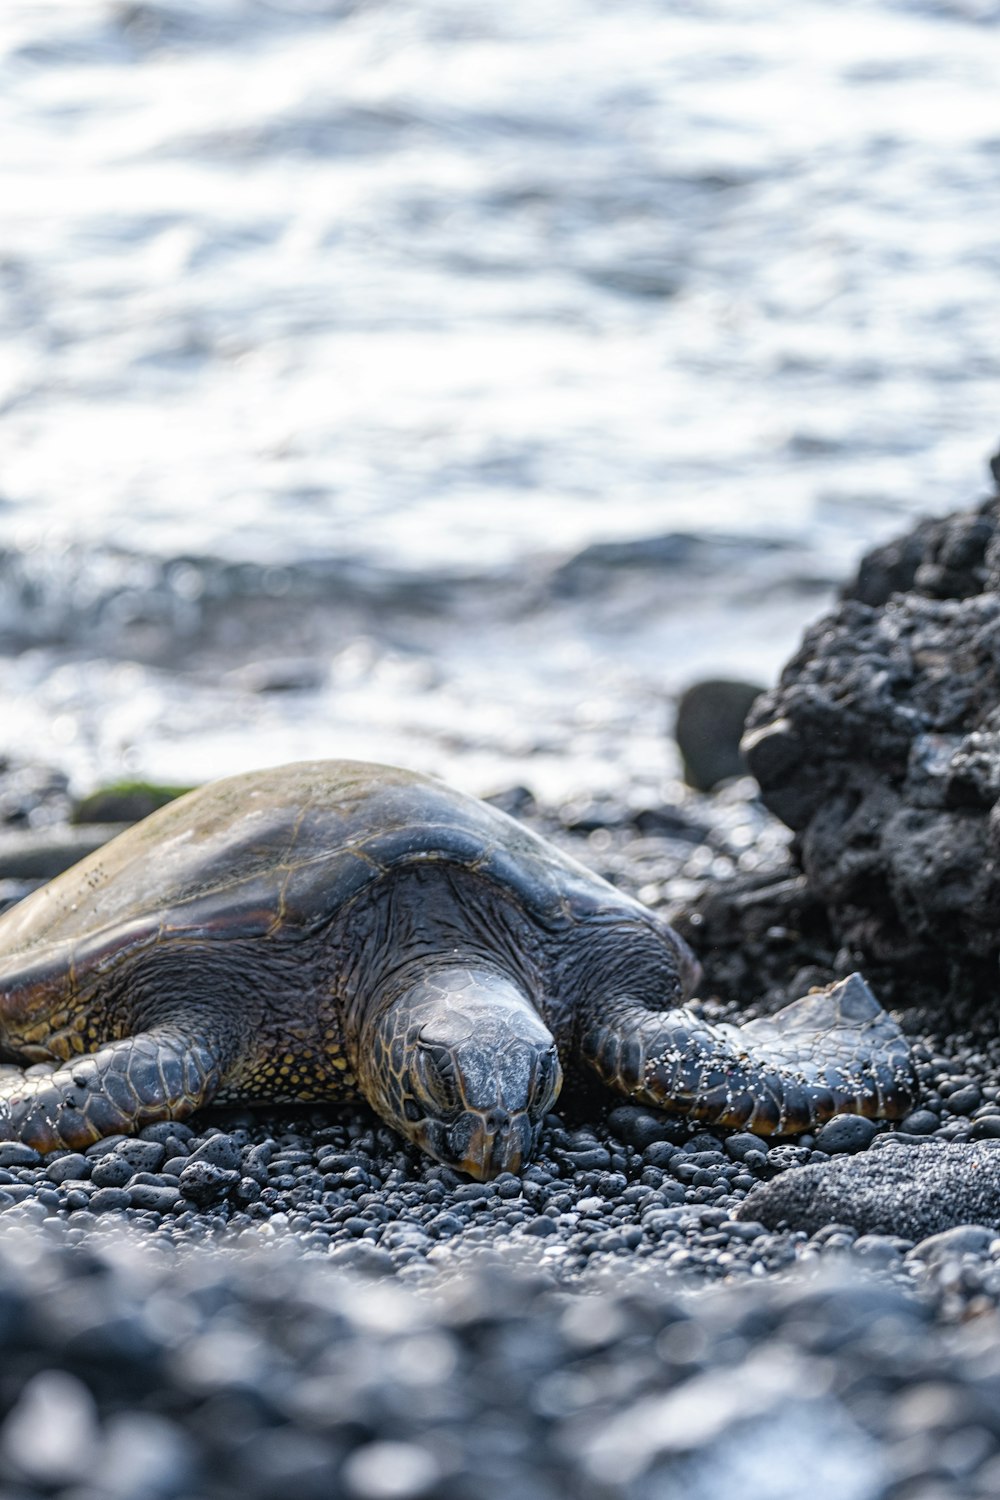 una grande tartaruga sdraiata in cima a una spiaggia rocciosa